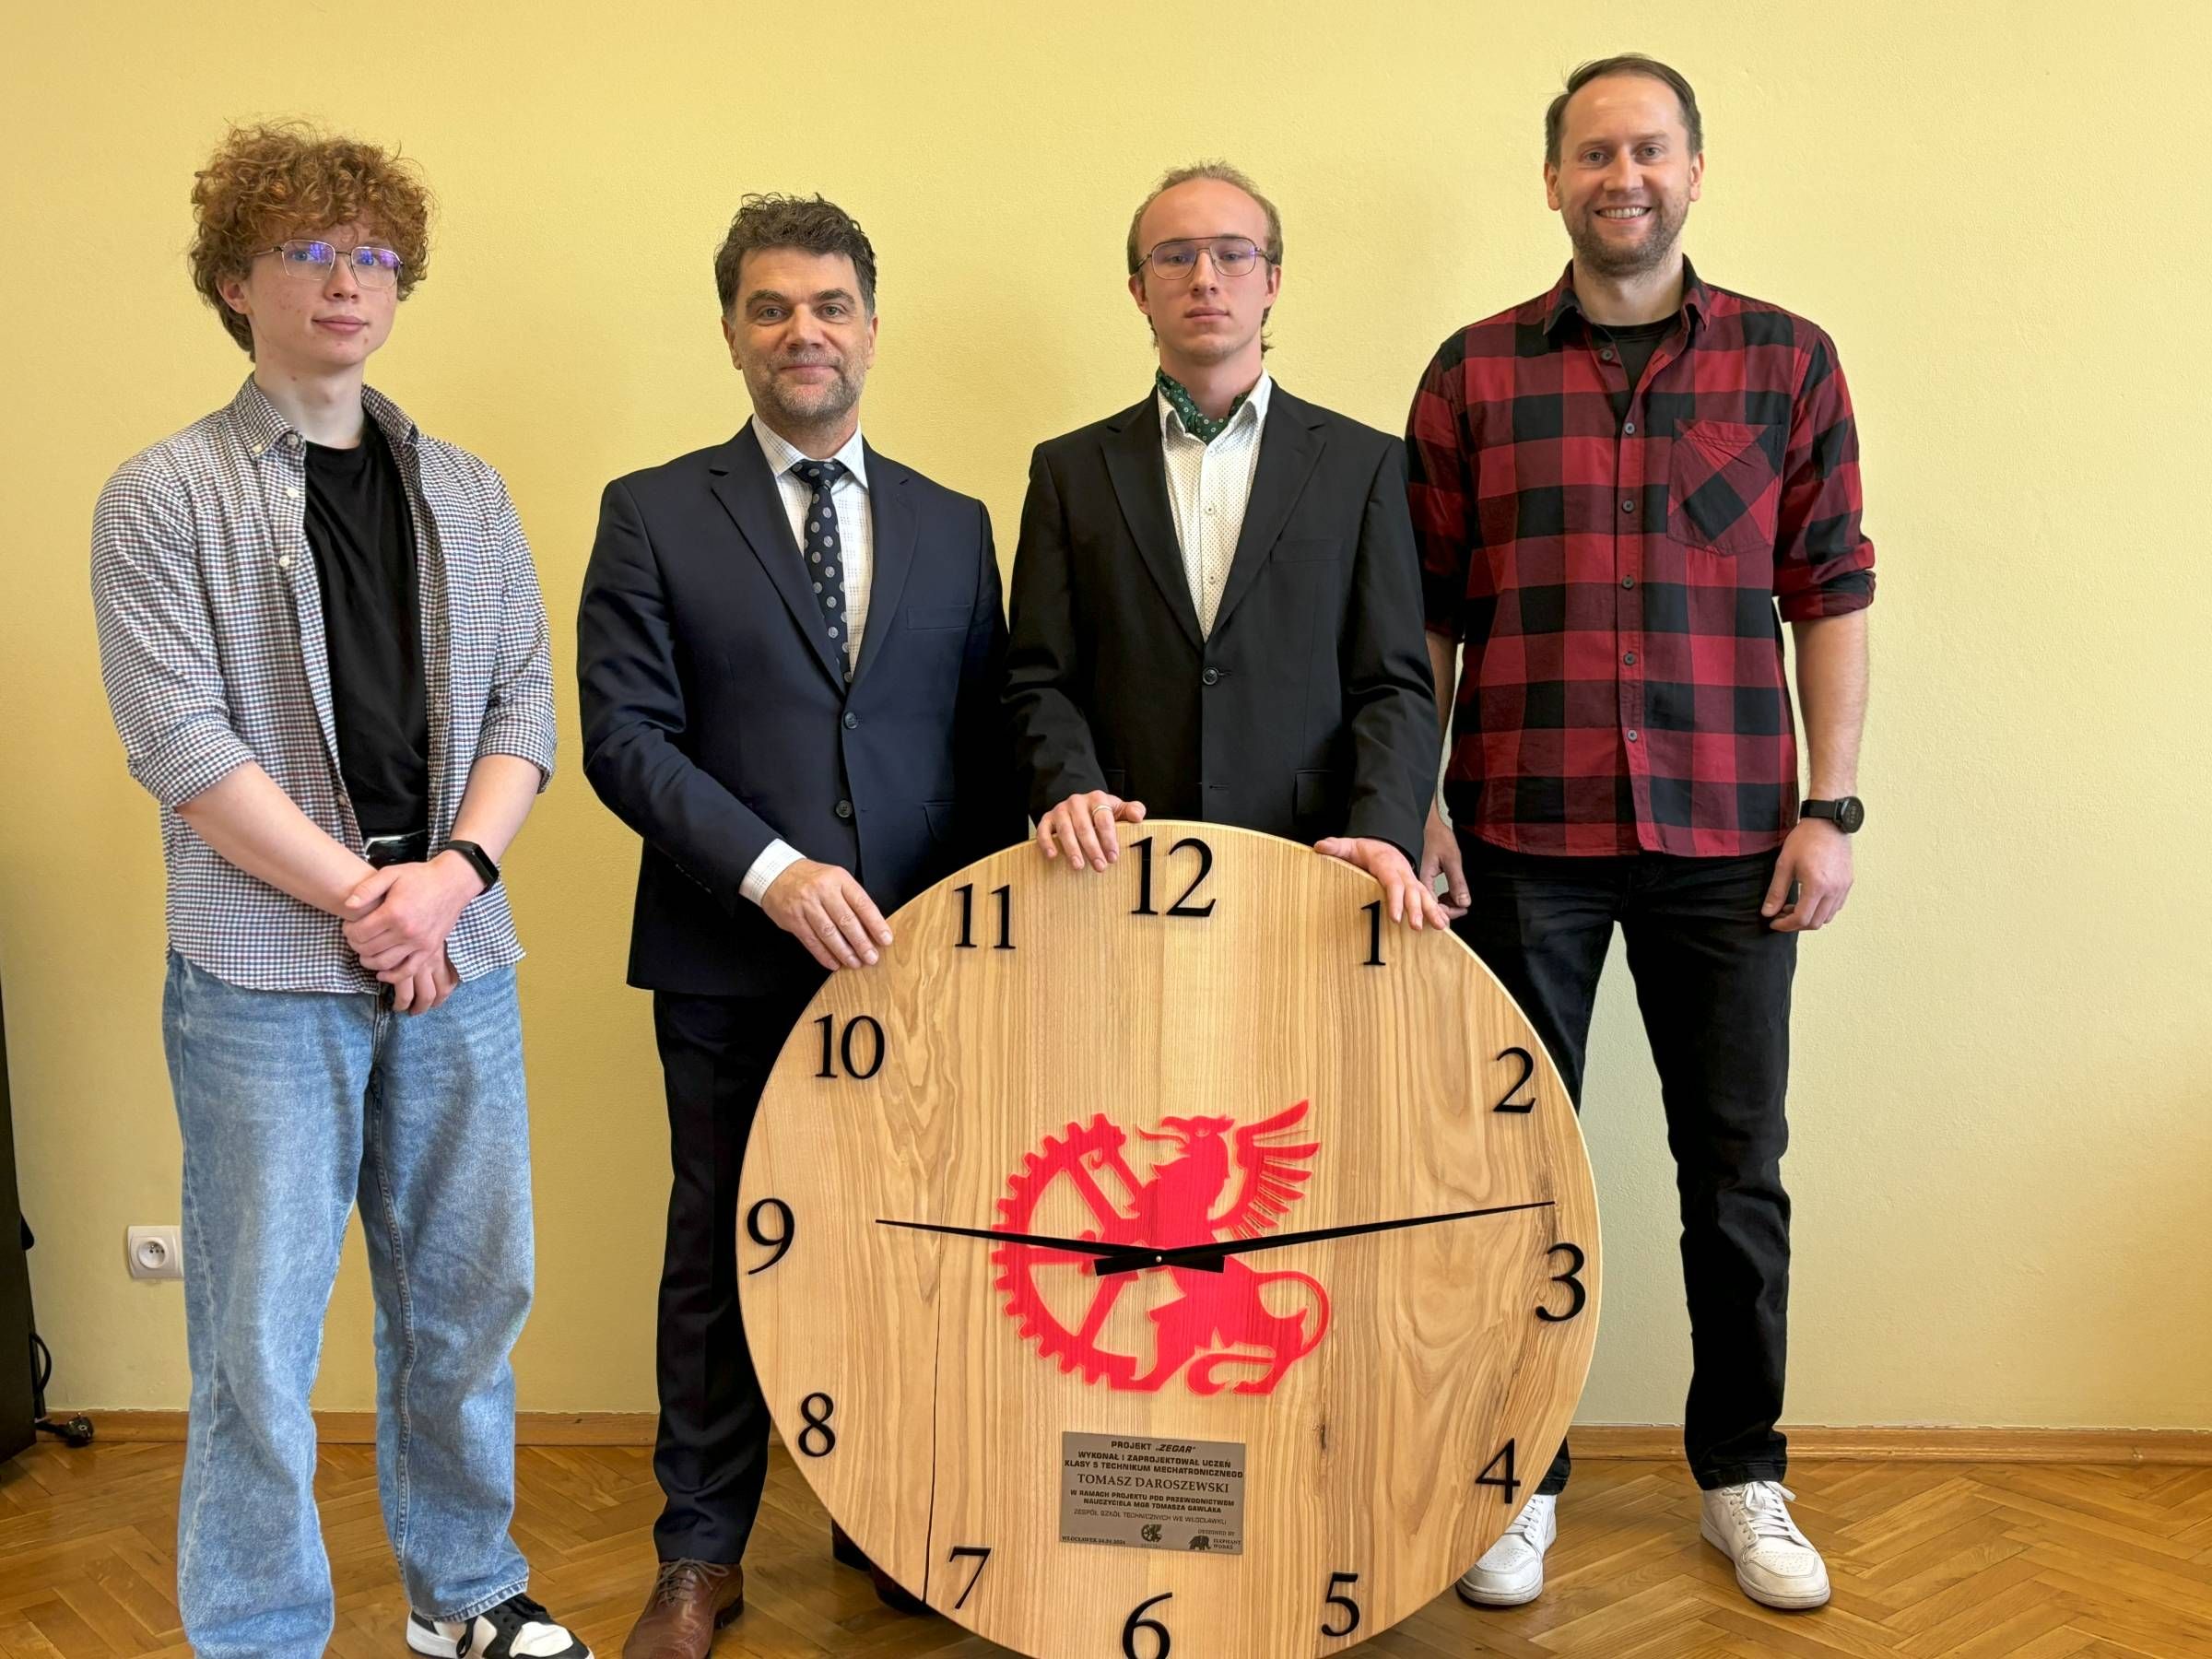 Zegar wykonany przez Tomasza Daroszewskiego wzbogaci wyposażenie pracowni mechatroniki